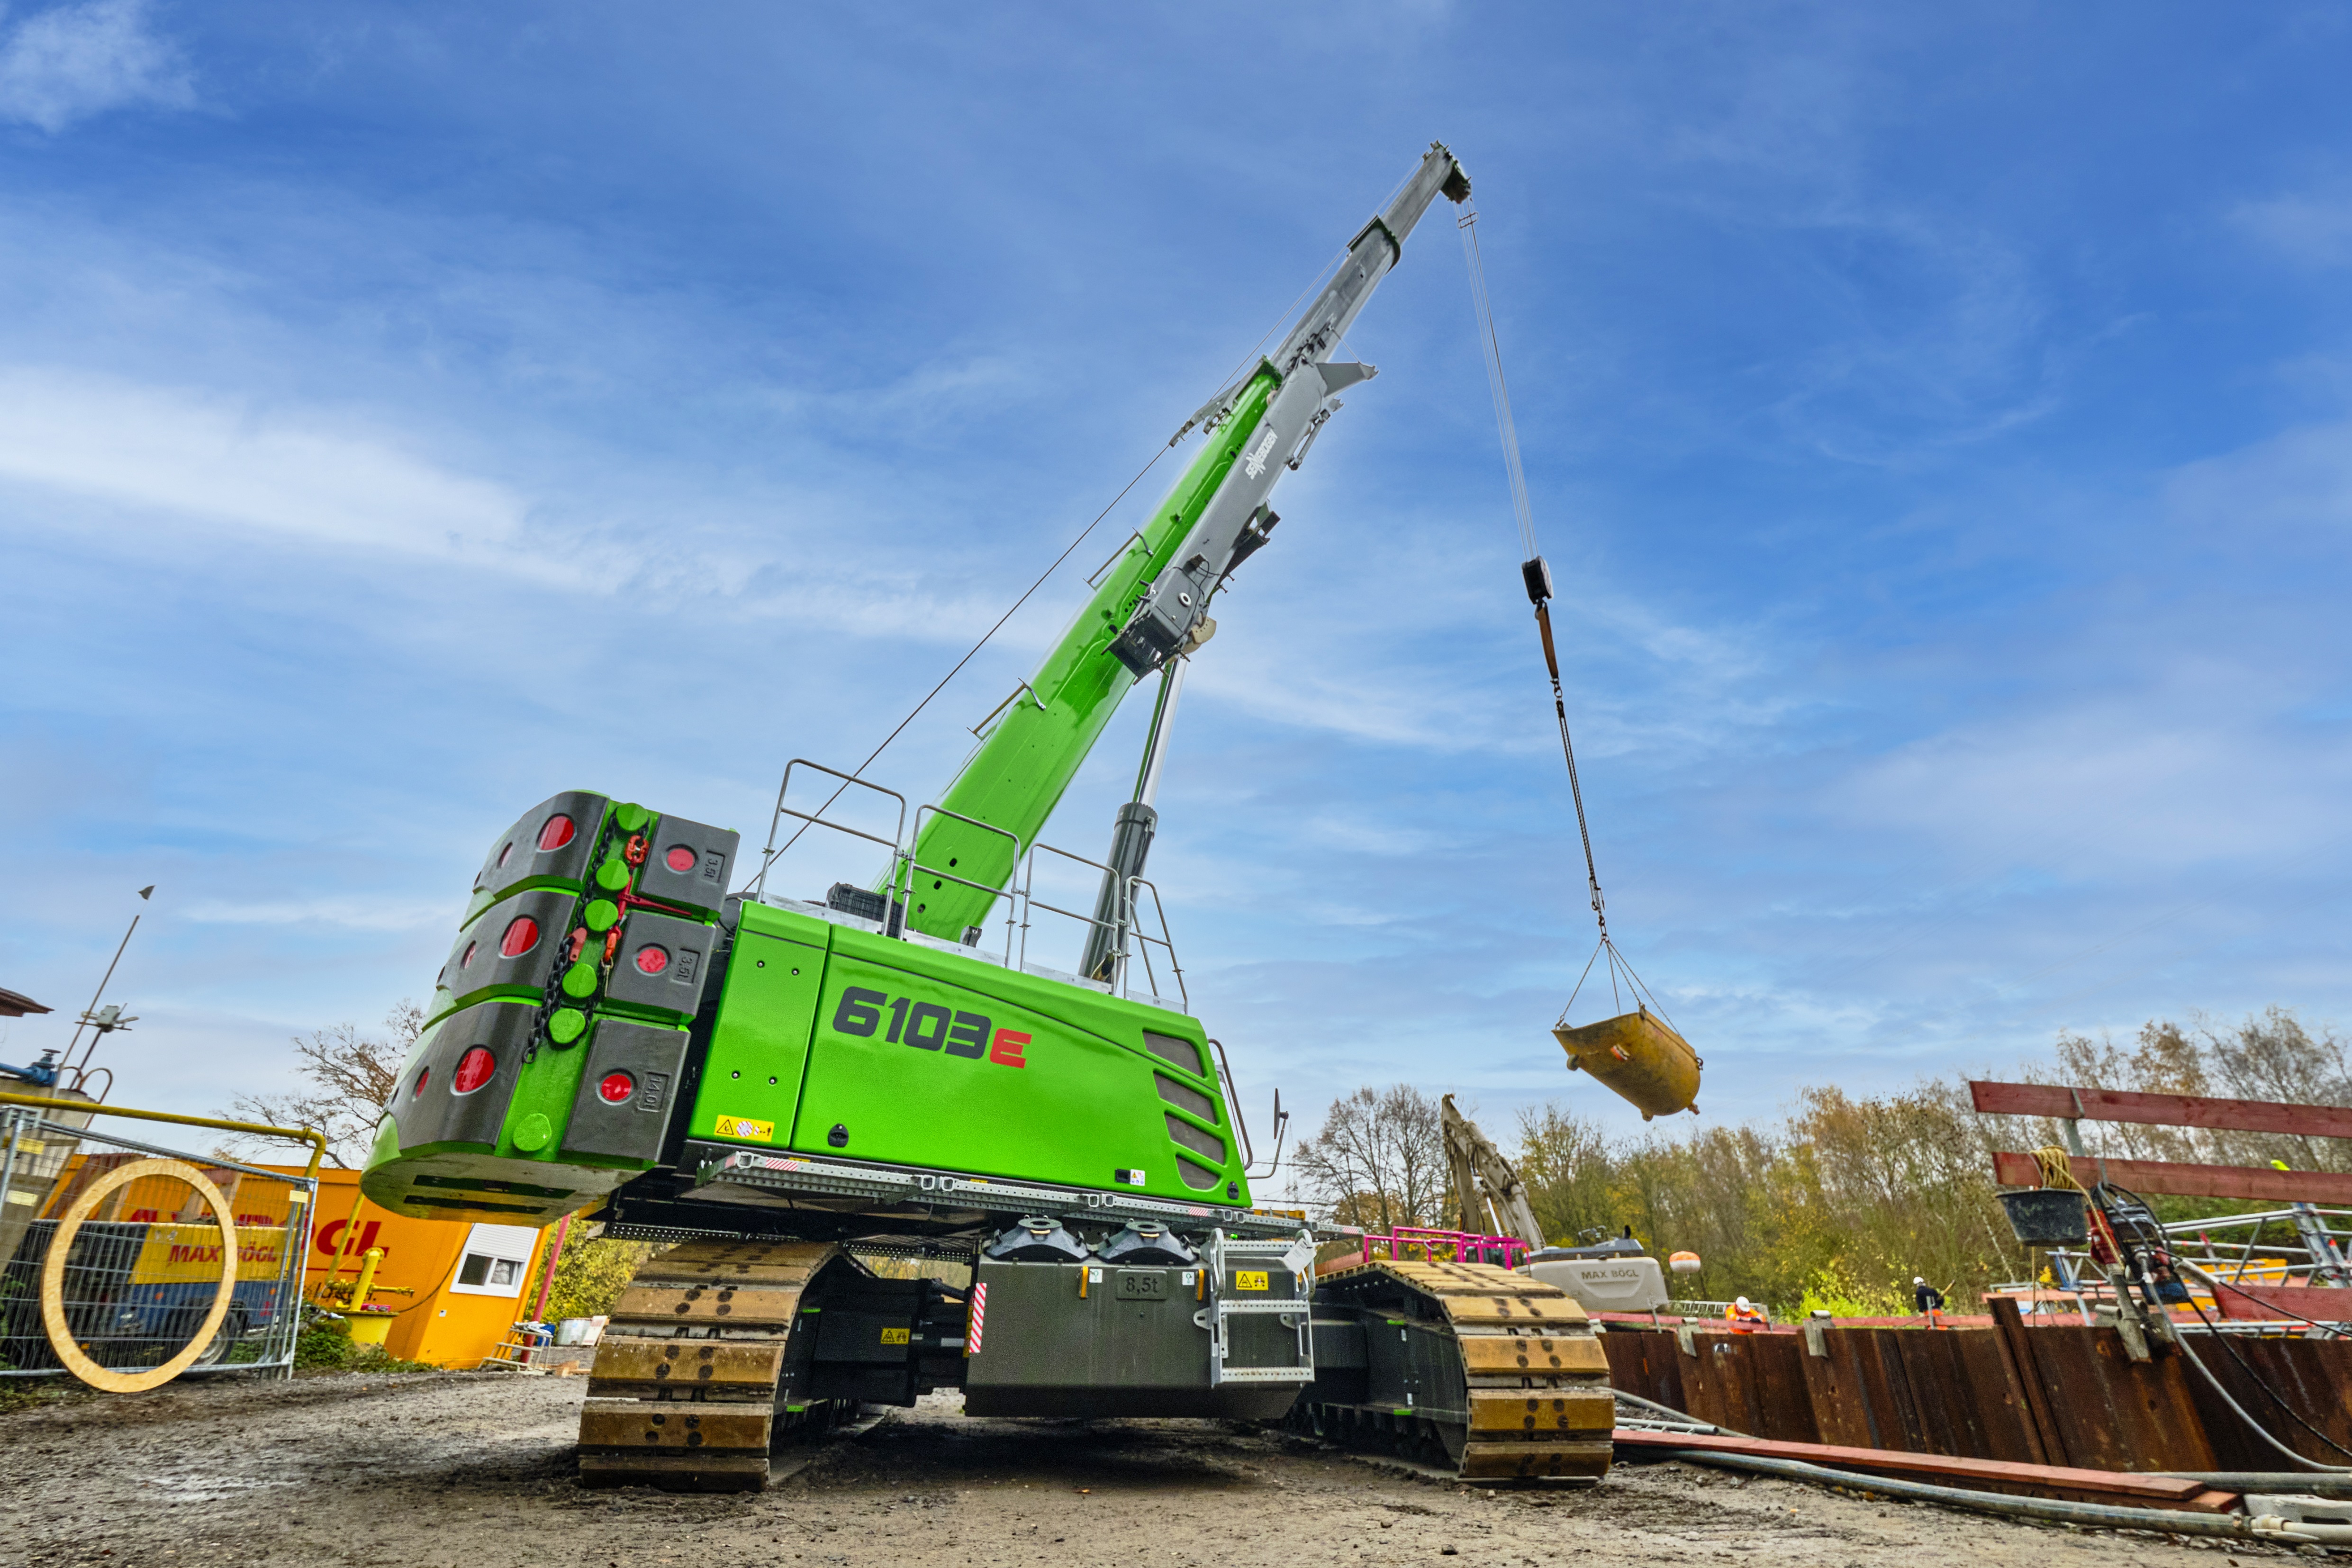 Suppliers of Sennebogen Mobile Crane Rental UK